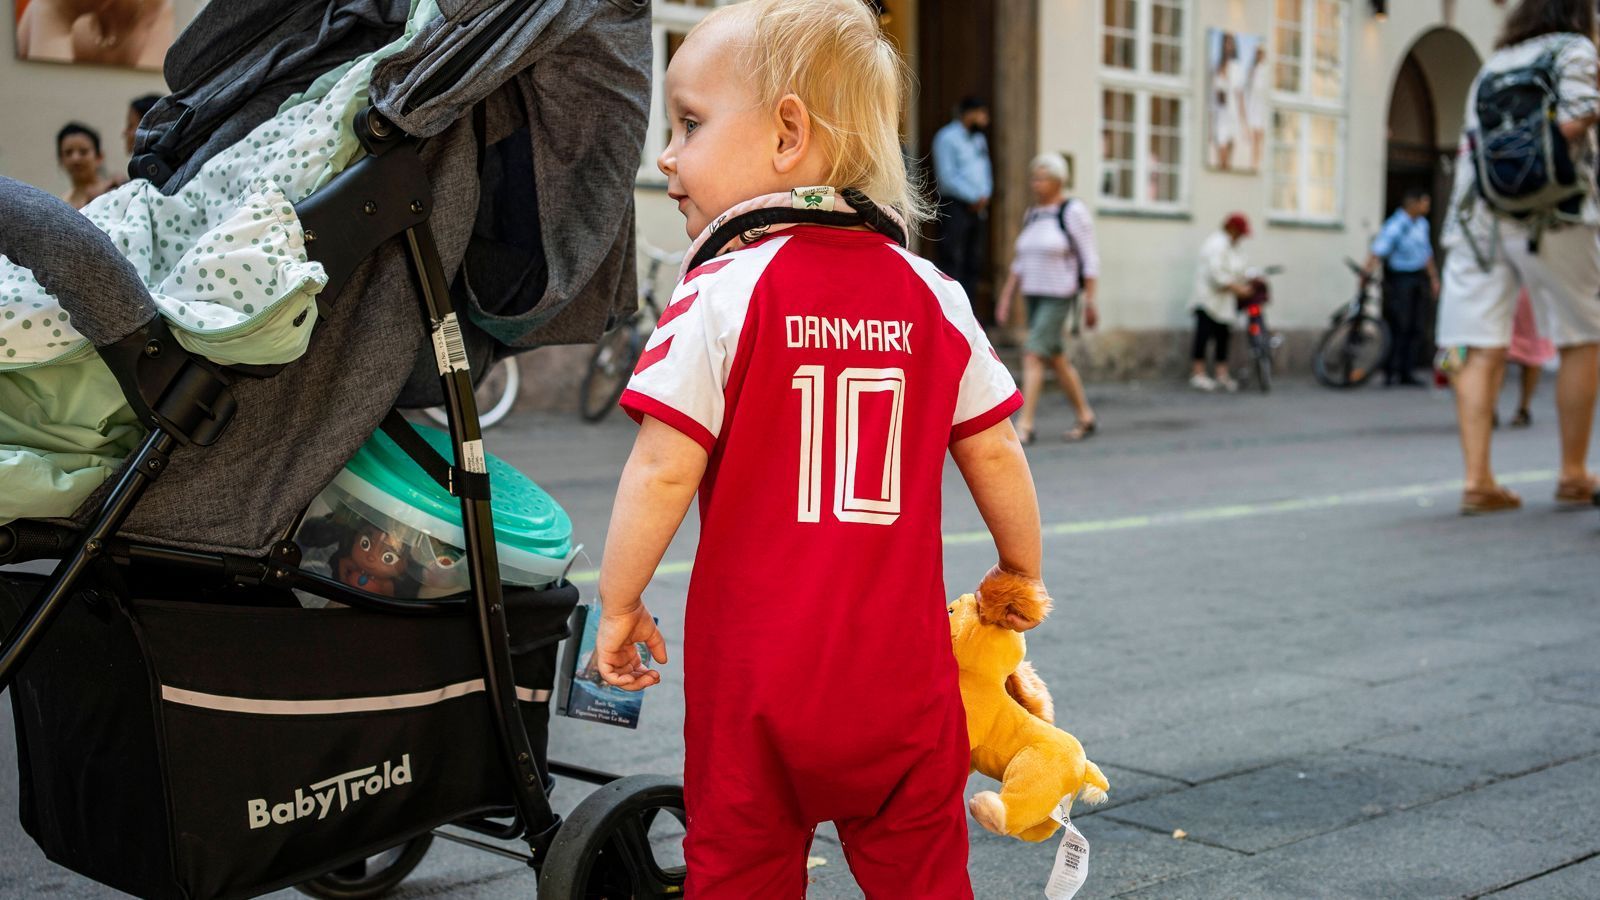 
                <strong>Auch die Kleinen sind dabei</strong><br>
                Eriksen überall: Auch die kleinsten dänischen Fans wissen, um wen es an diesem Tag ging.
              